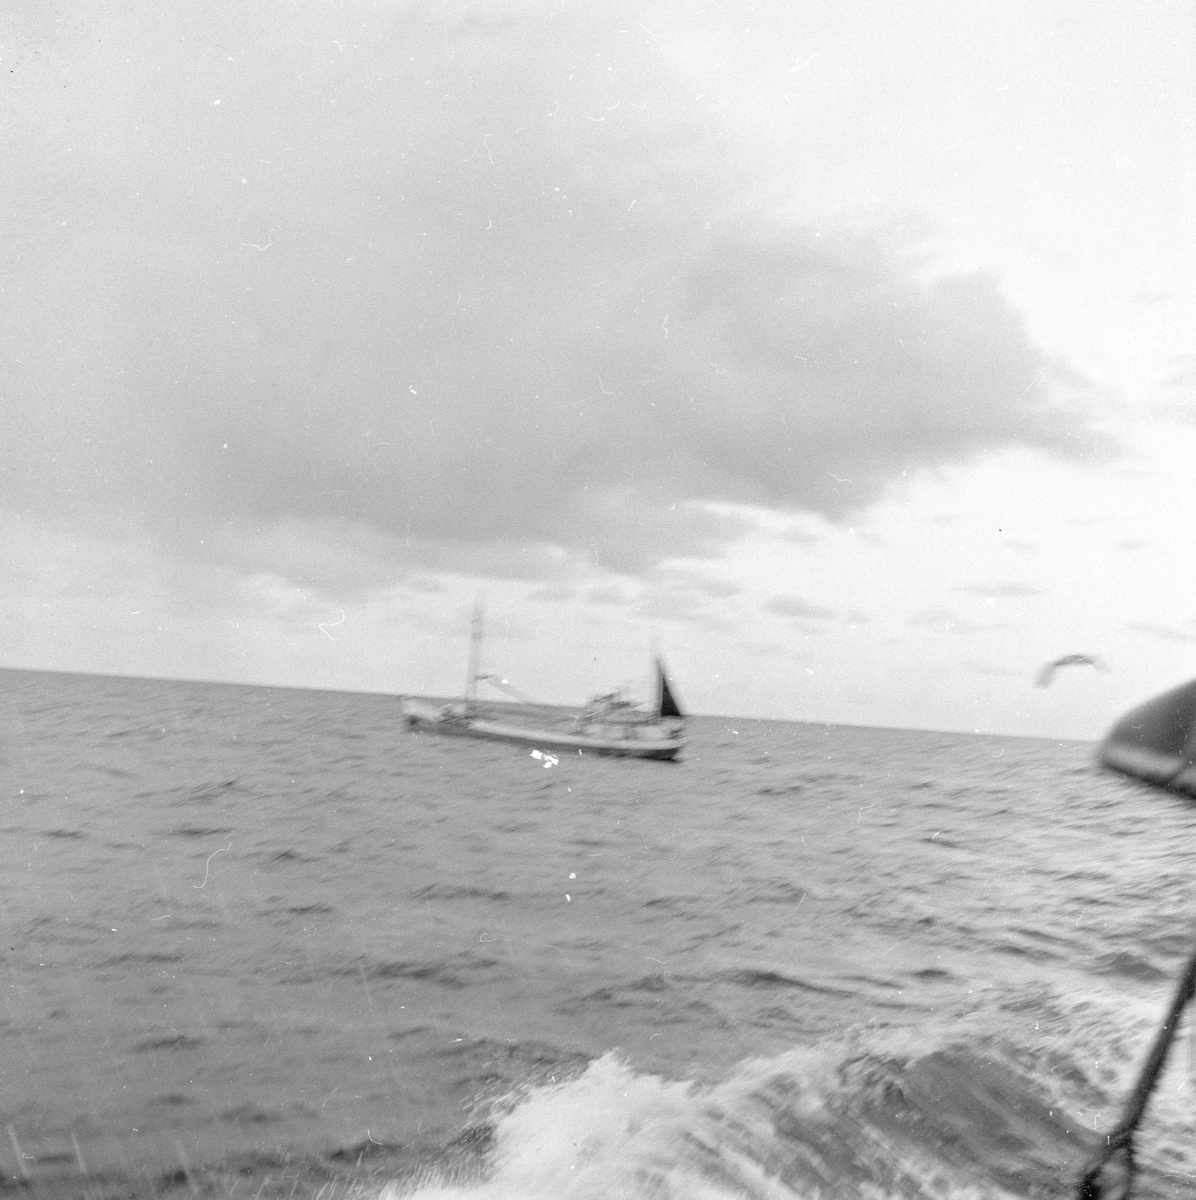 Pigghåfiske på Shetland.
Shetland, 14-22. mai 1958,  fiskeskøyte i åpen sjø, annen båt i horisonten.